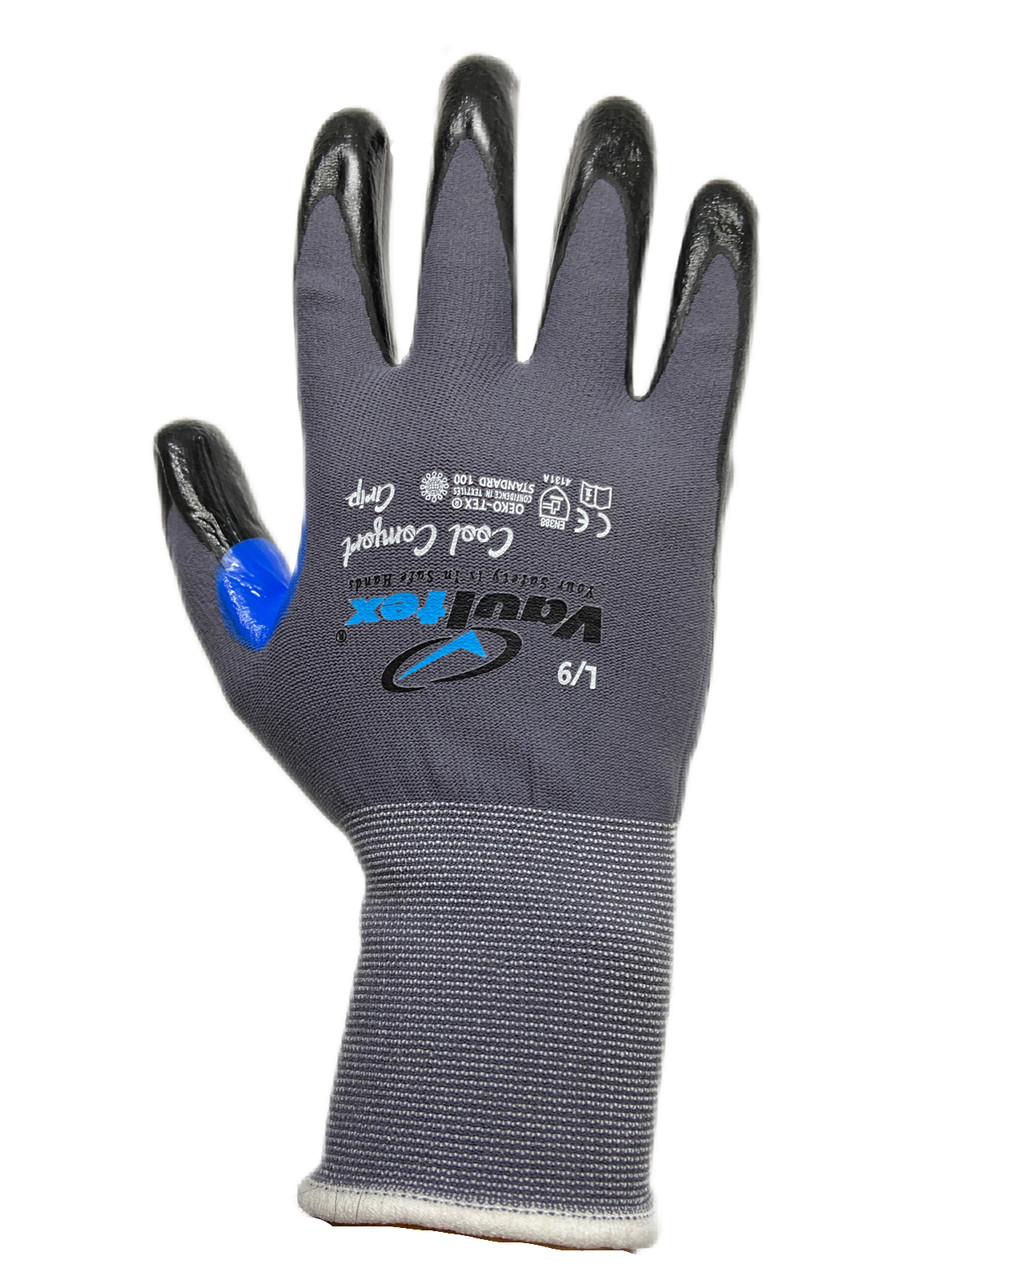 Перчатки антипорез защитные Cool Comfort Grip с нитриловым покрытием + доп защита промежности большого пальца